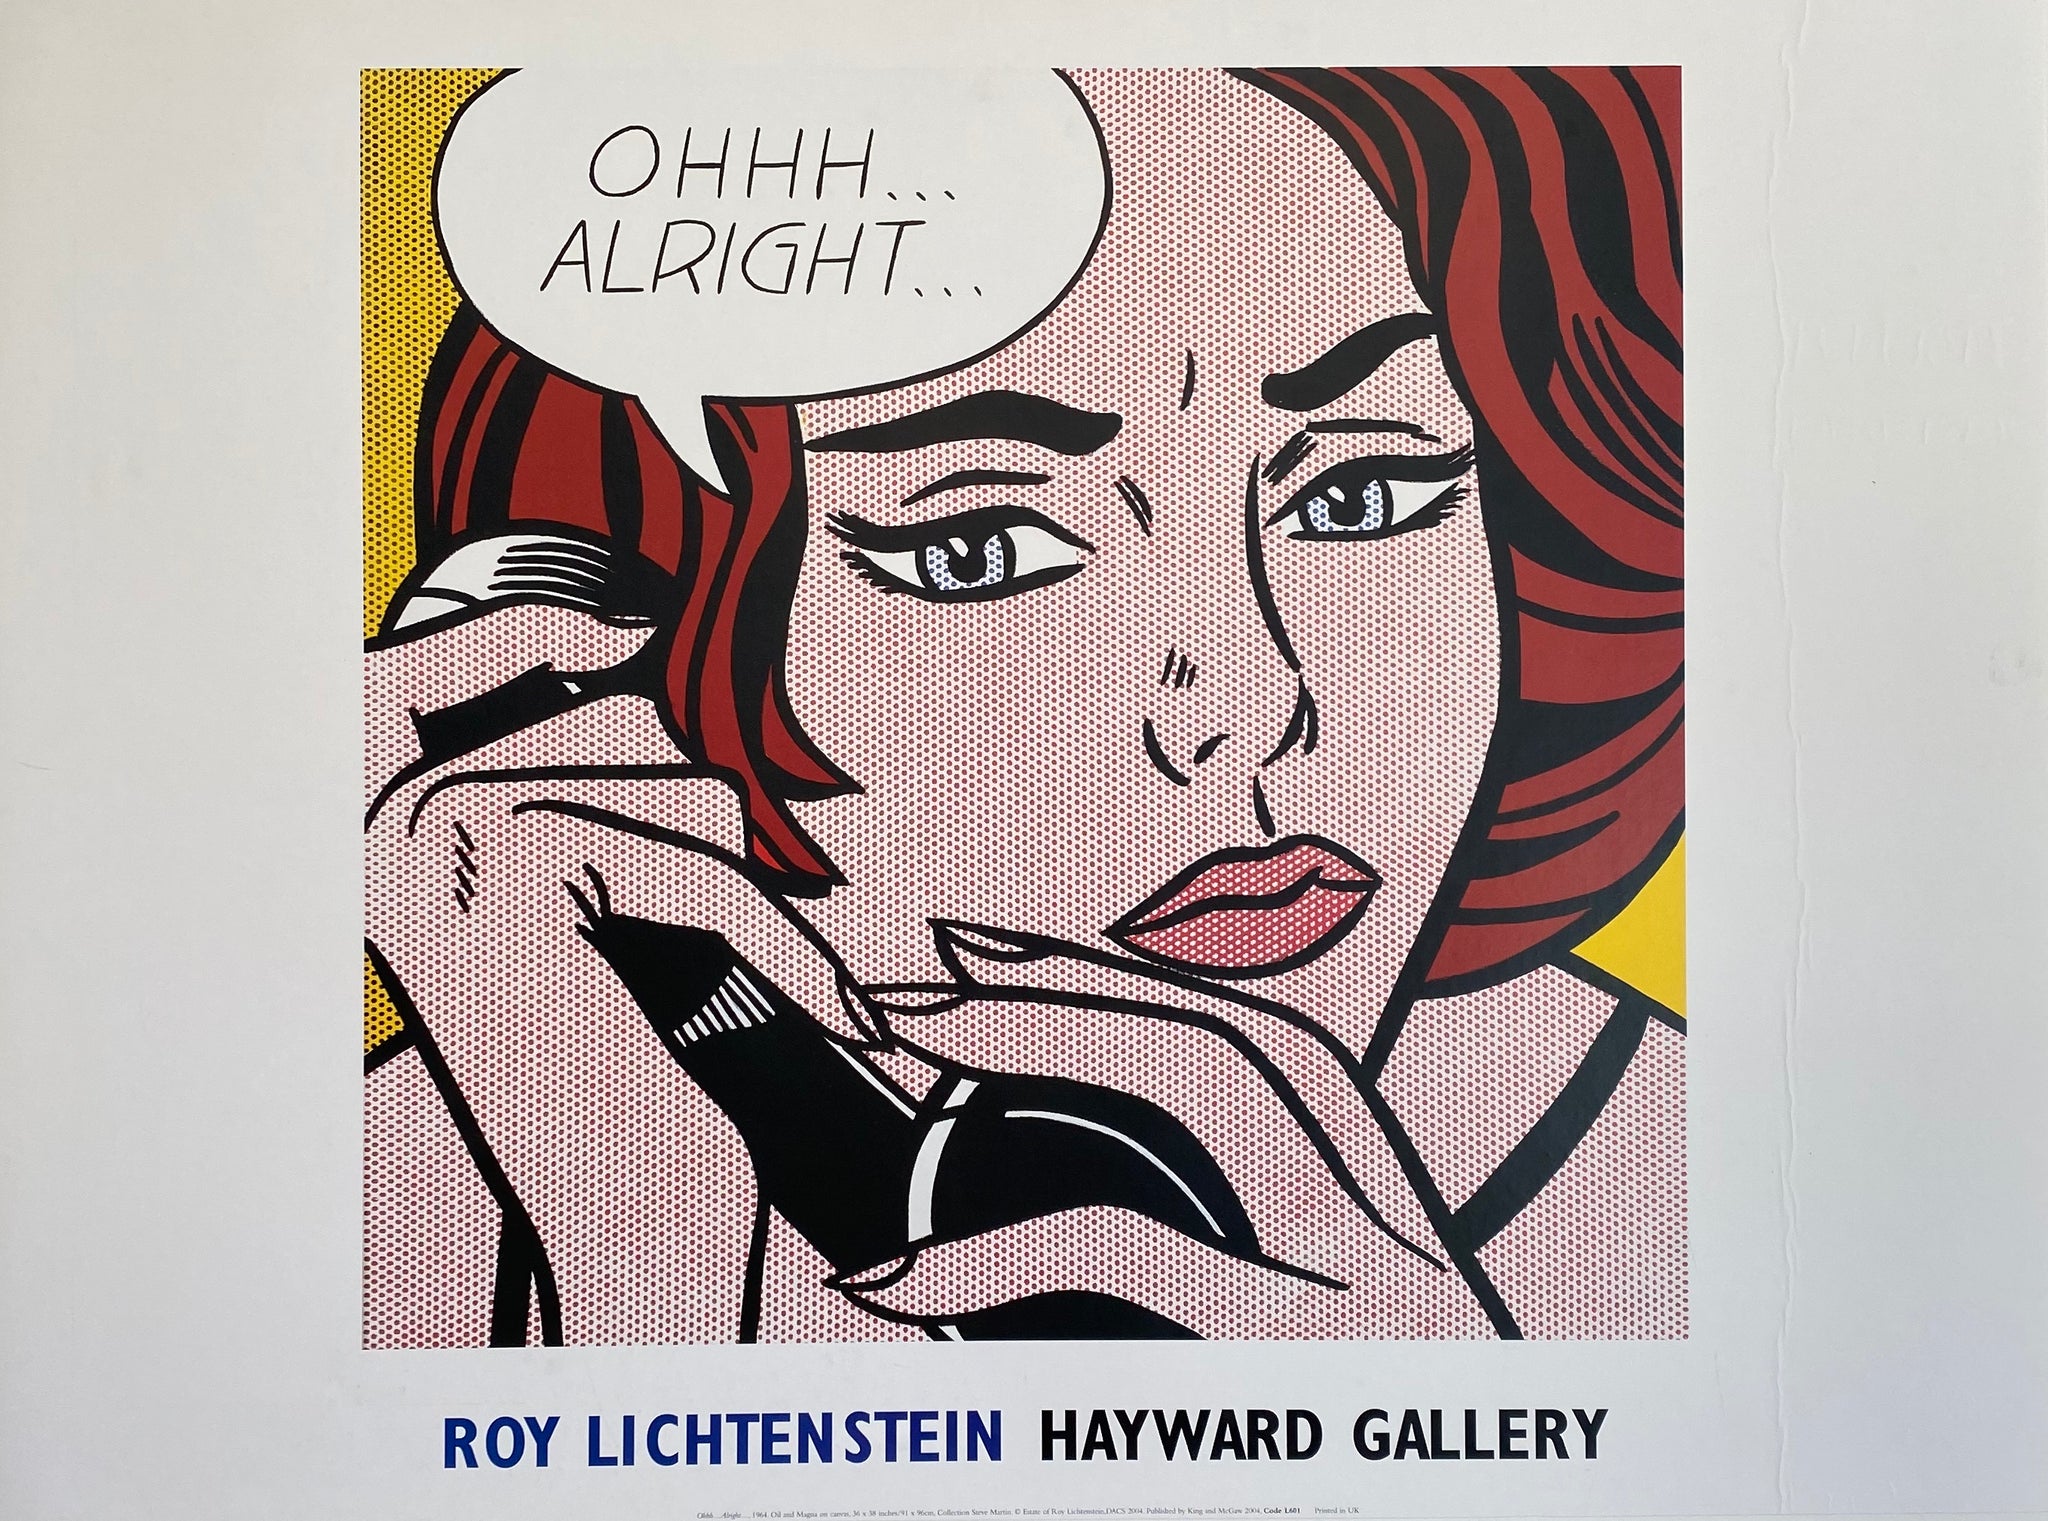 Affiche ancienne galerie Hayward "Ohhh alright" Par Roy Lichtenstein, 2004